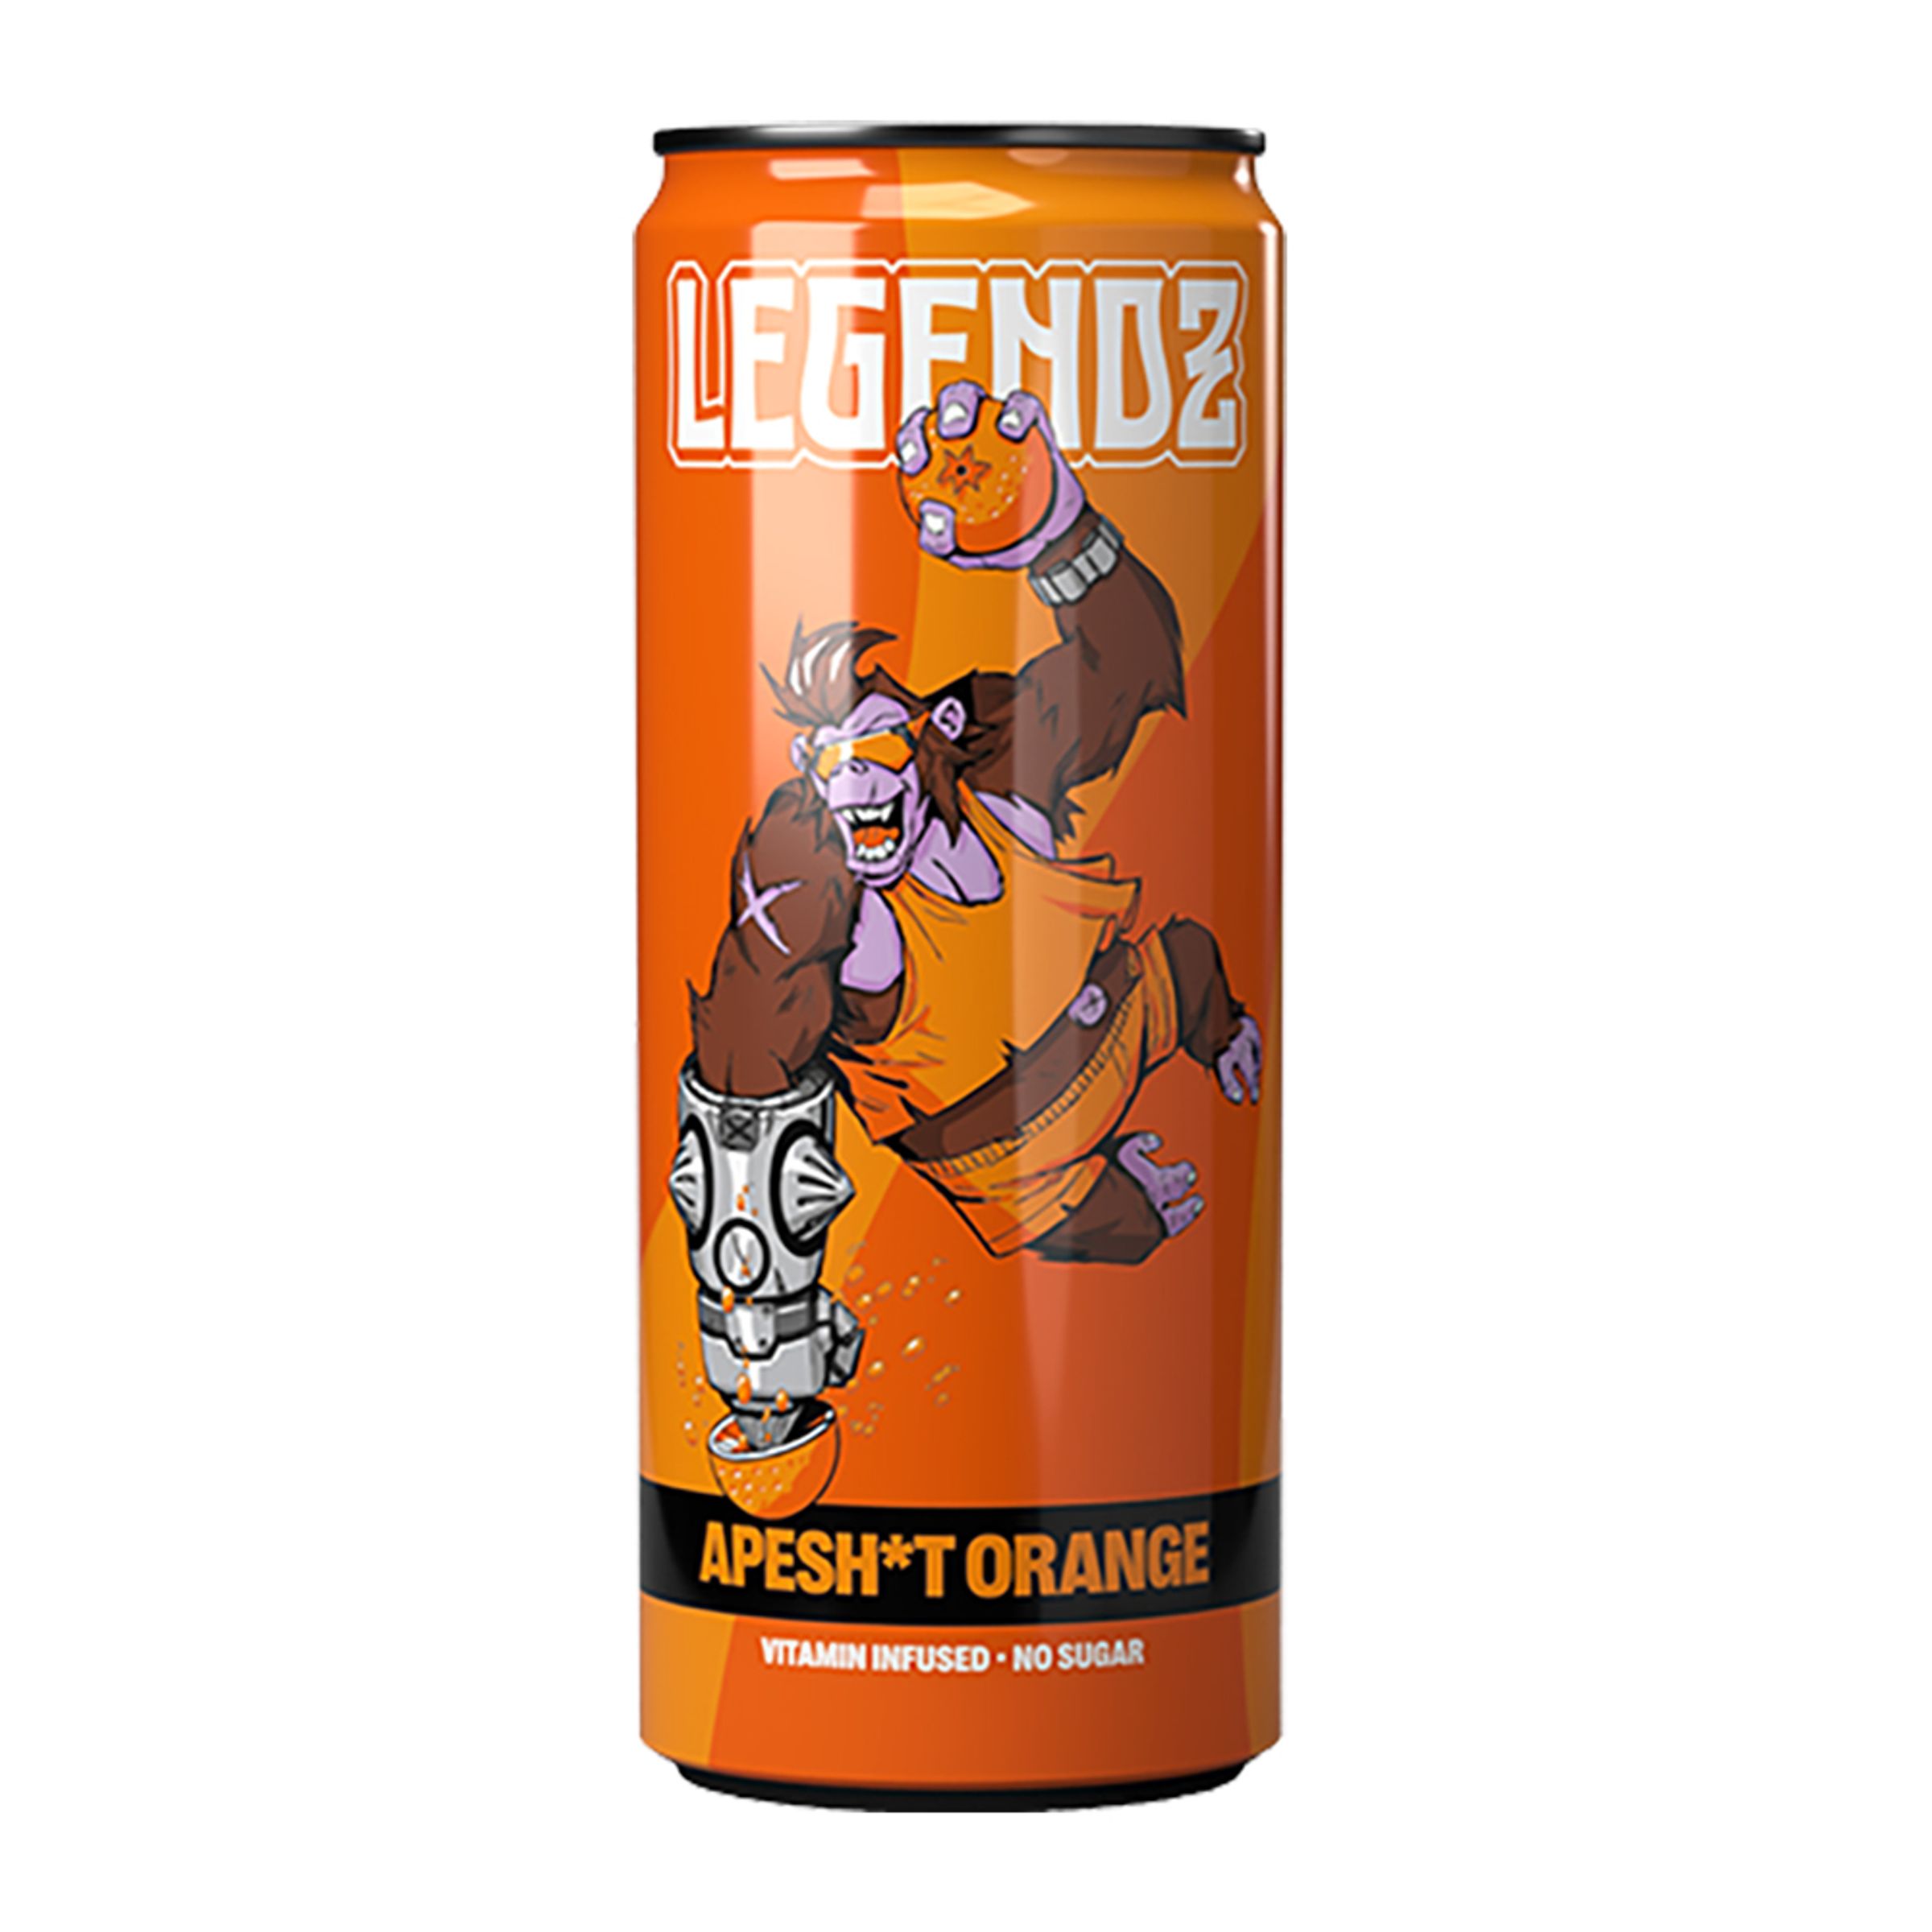 Legendz Apesh*t Orange - 1-pack